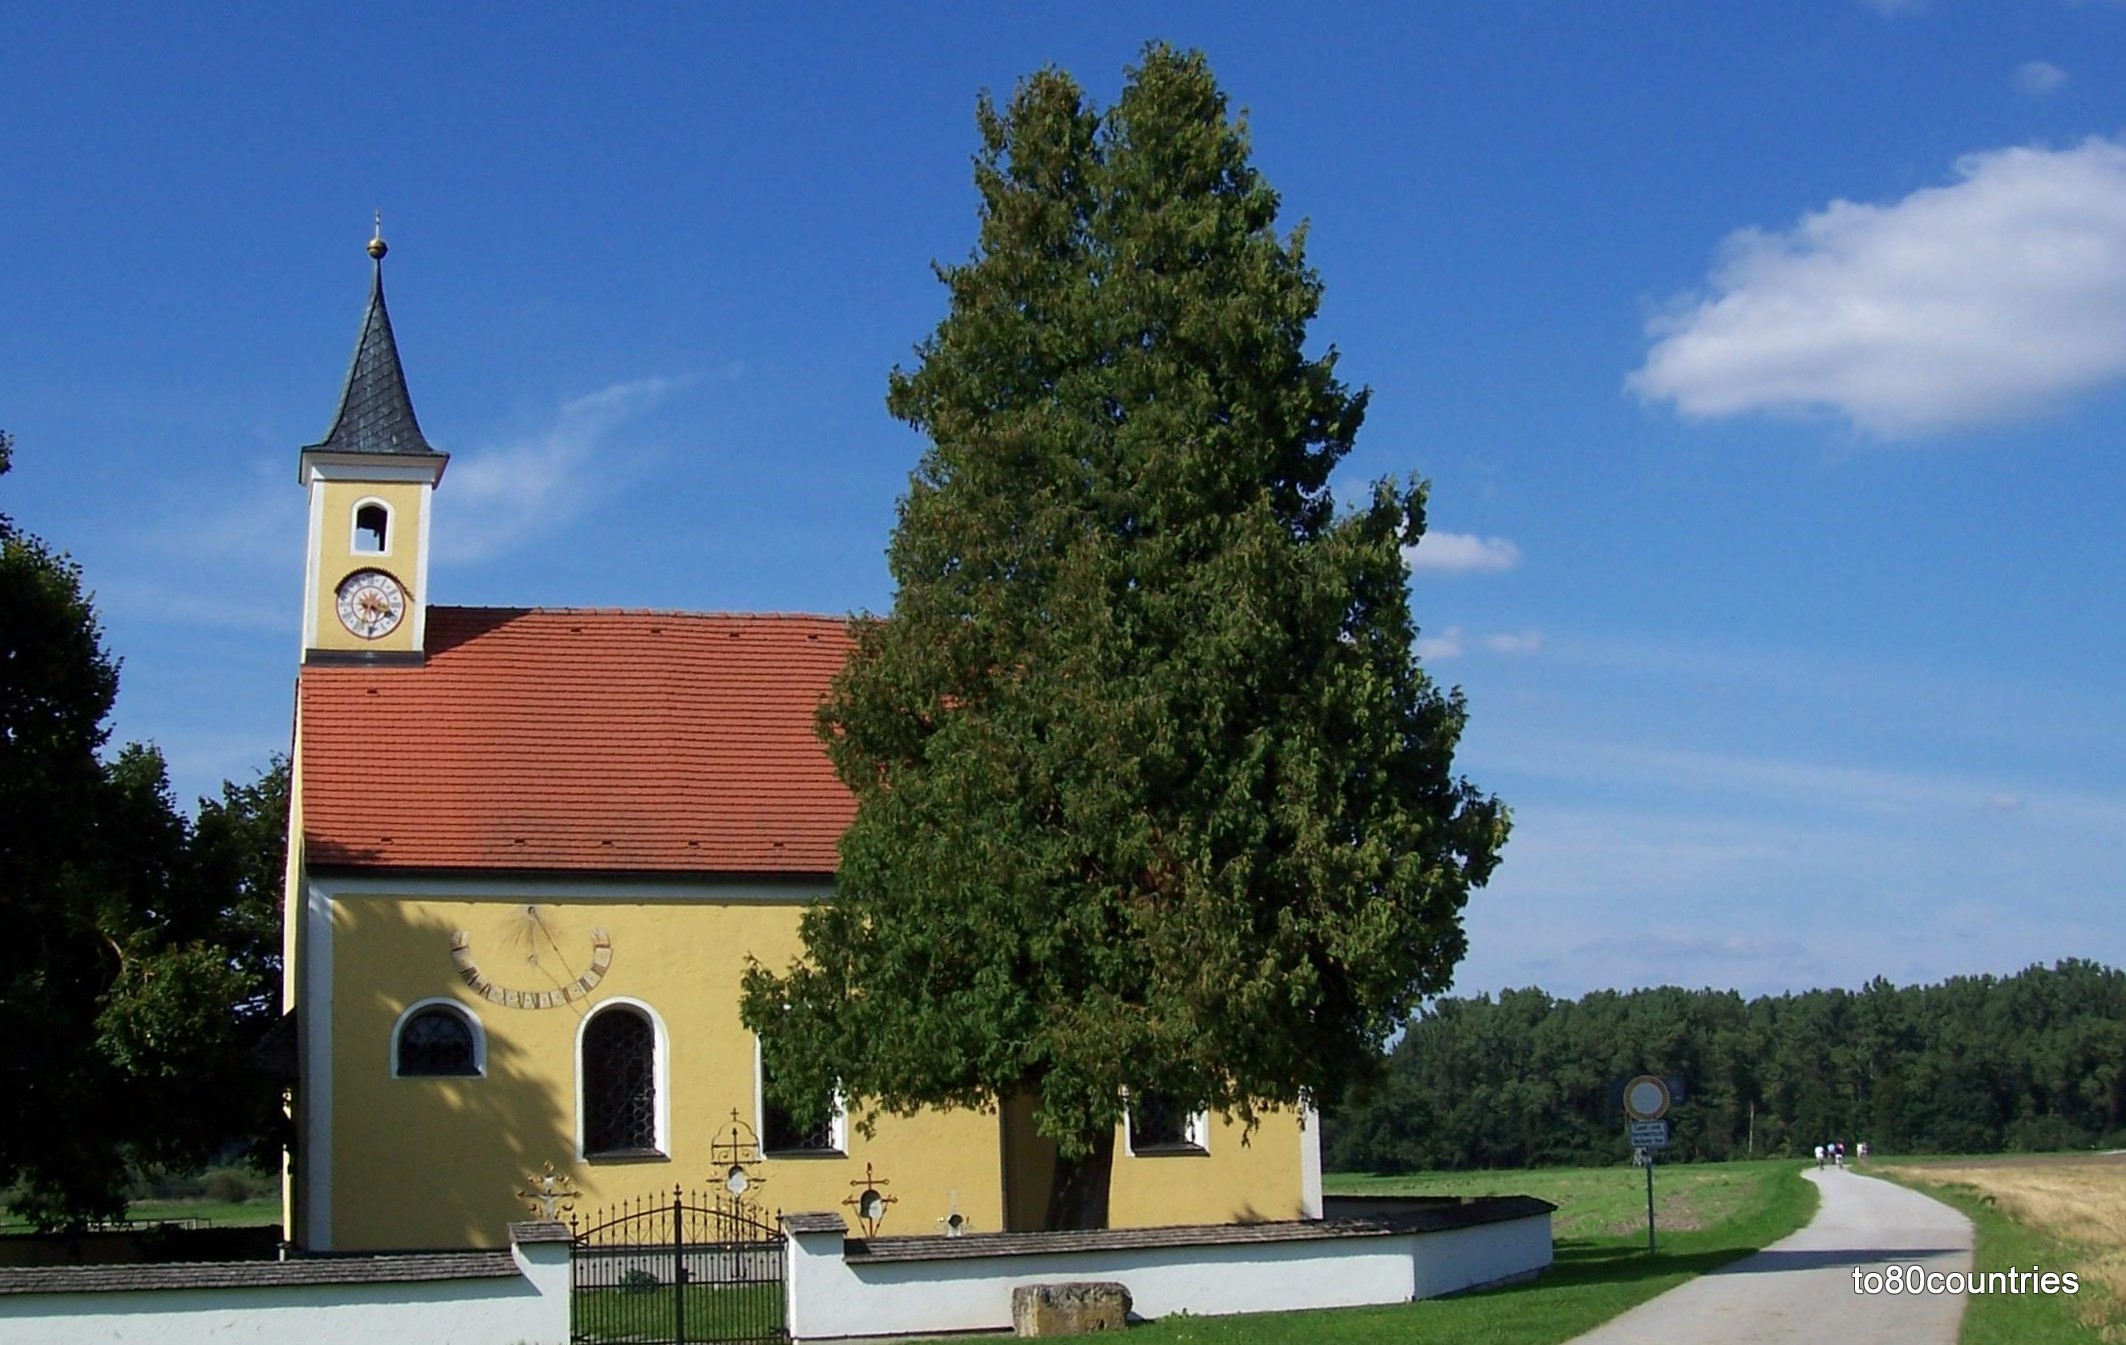 St. Vitus am Zellhof